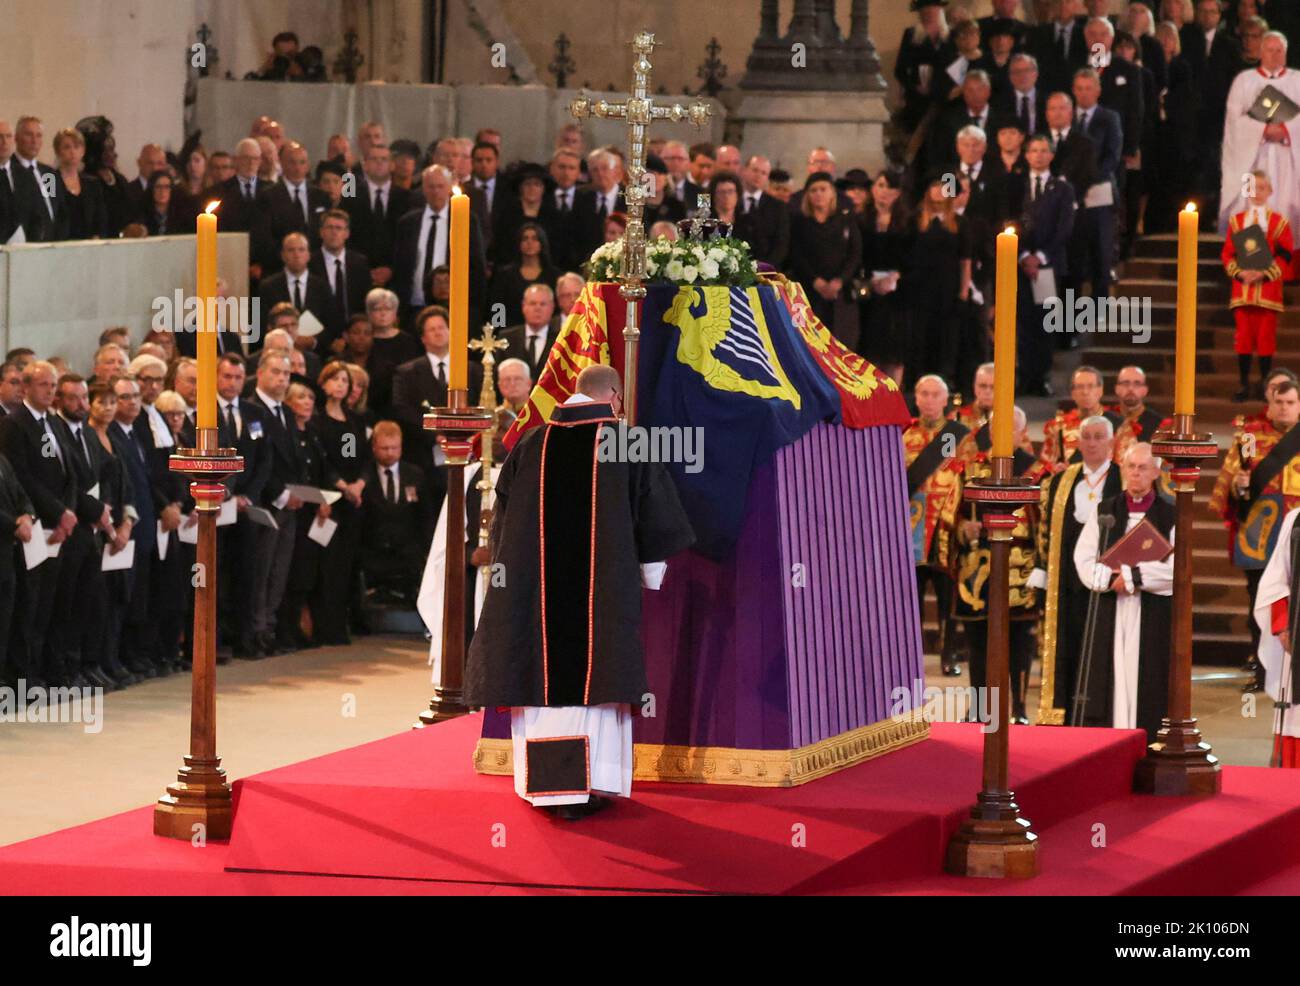 Ein Priester hält ein Kreuz neben dem Sarg von Königin Elizabeth II., das im Royal Standard mit der Imperial State Crown auf der Oberseite drapiert ist, während es auf der Katafalque in Westminster Hall, London, ruht, wo es vor ihrer Beerdigung am Montag in einem Zustand liegen wird. Bilddatum: Mittwoch, 14. September 2022. Stockfoto